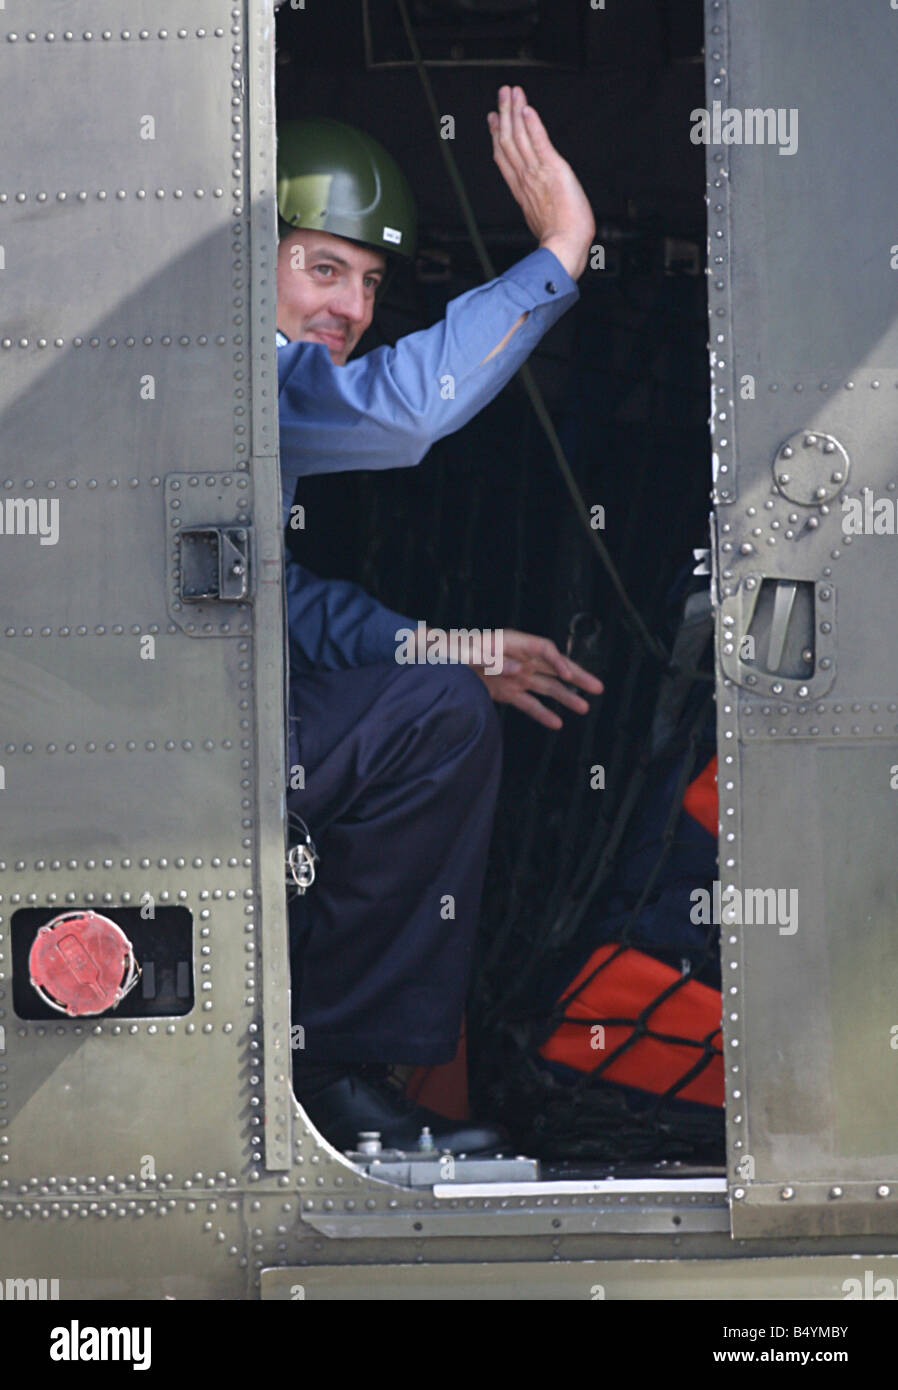 Das Militärpersonal in Rückkehr in die Heimat Iran gefangen gehalten. Landung am Flughafen Heathrow vor der Übermittlung an die Royal Navy Hubschrauber abgebildet. Zurück auf britischem Boden wieder. 5. April 2007; Stockfoto